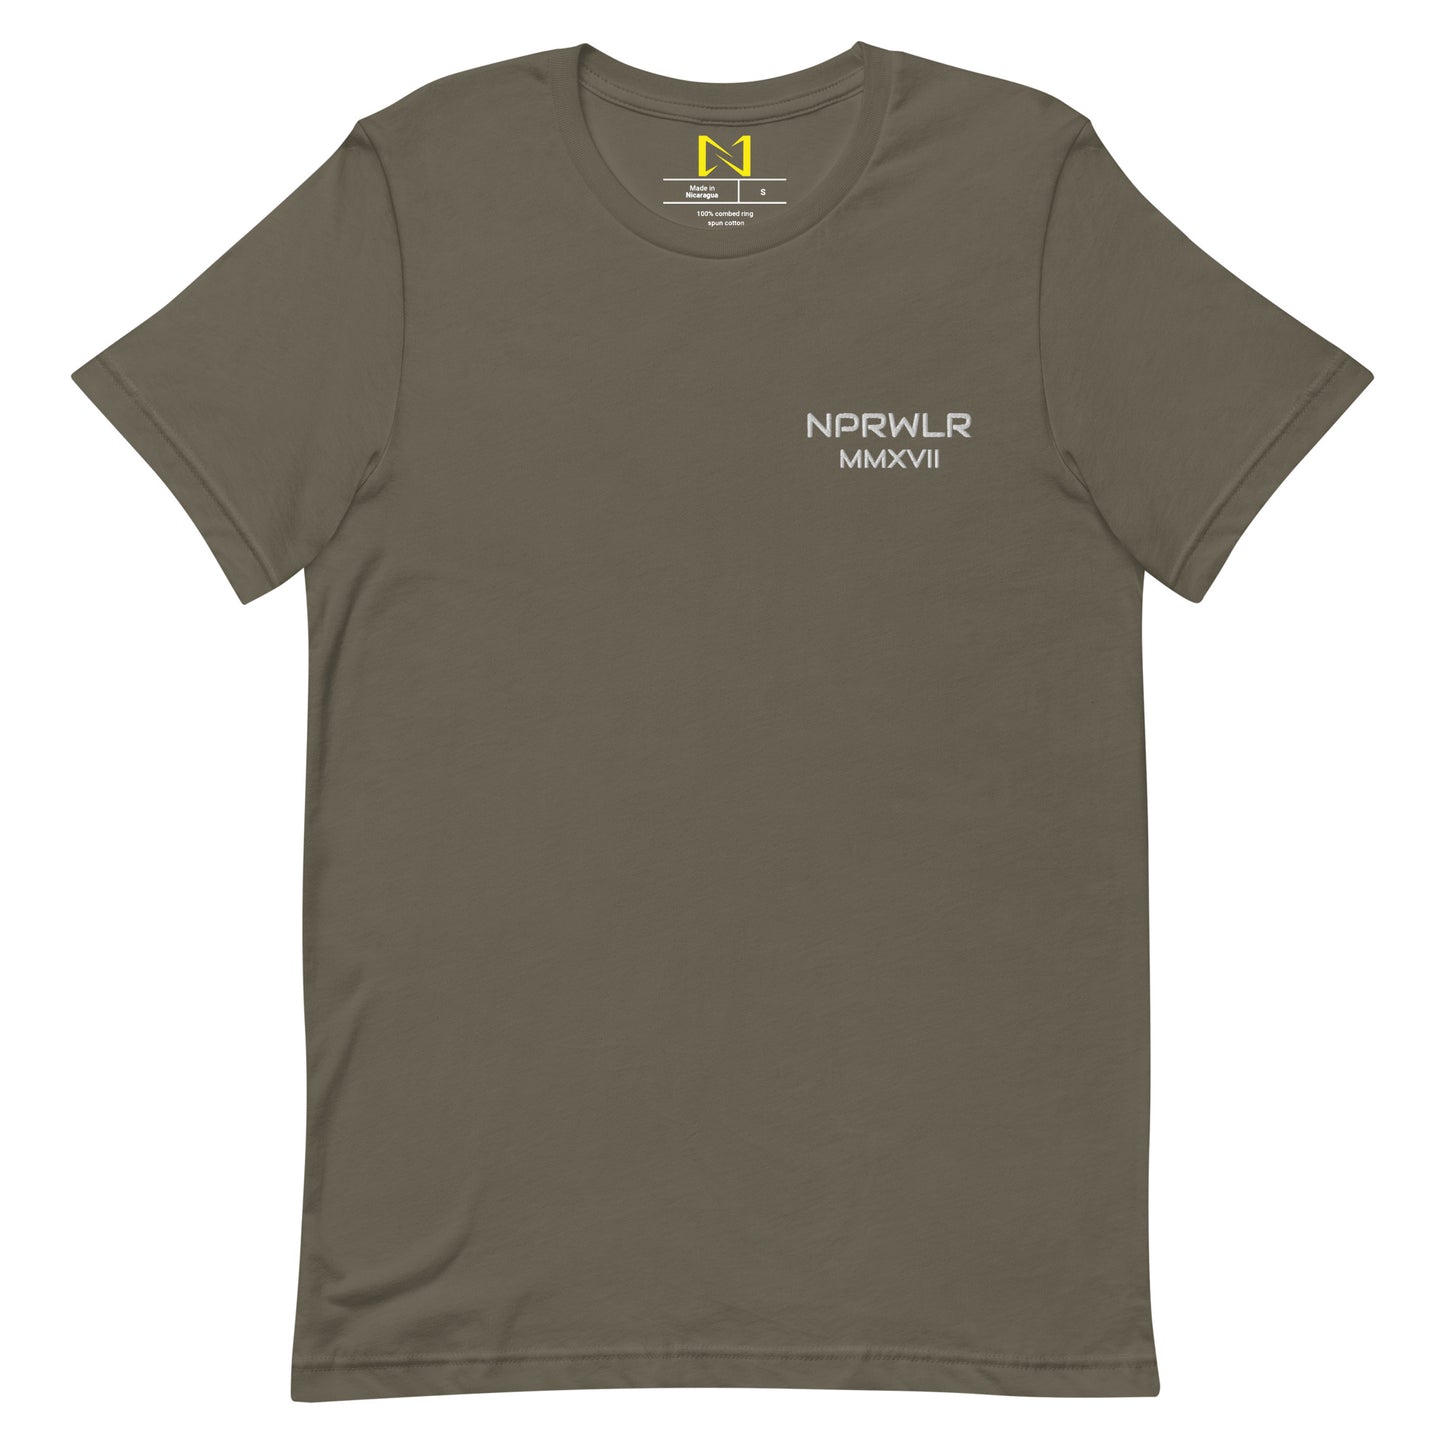 NPRWL MMXVII t-shirt